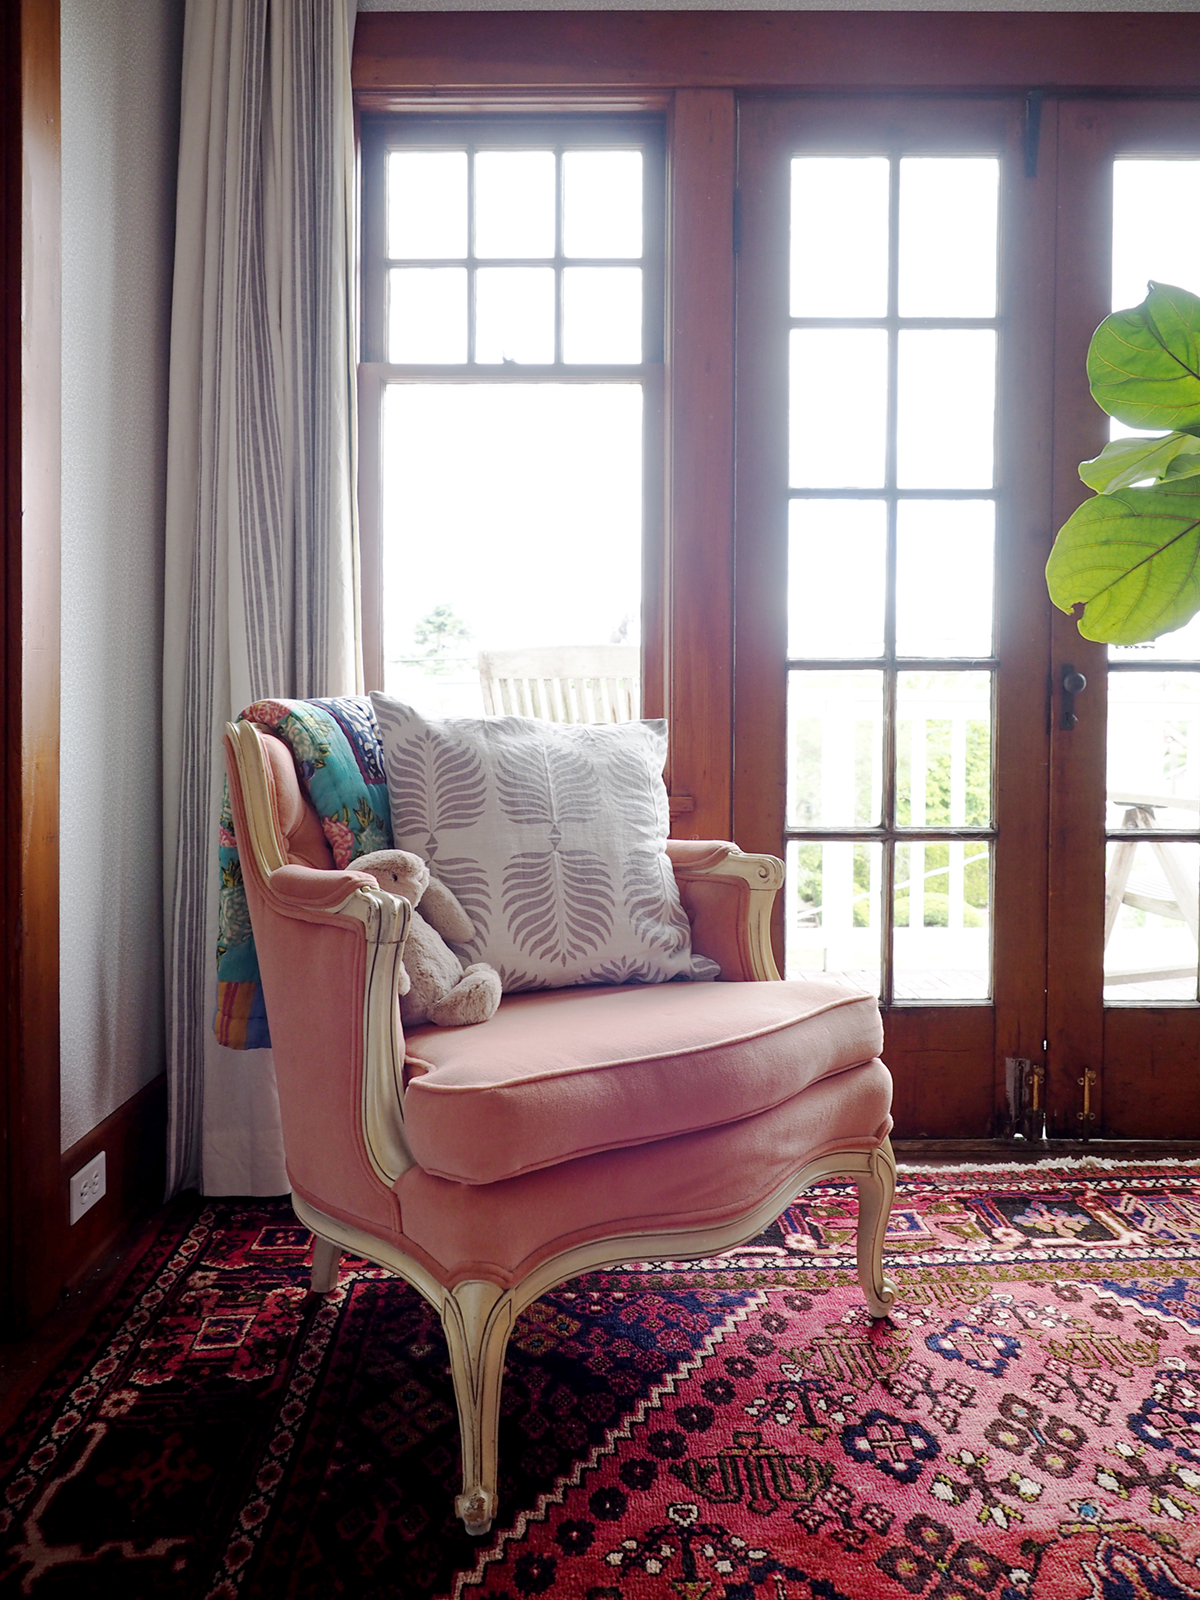 jolie chaise vintage rose dans la chambre d'enfant | relooking de pépinière inspiré de cottage vintage sur coco kelley